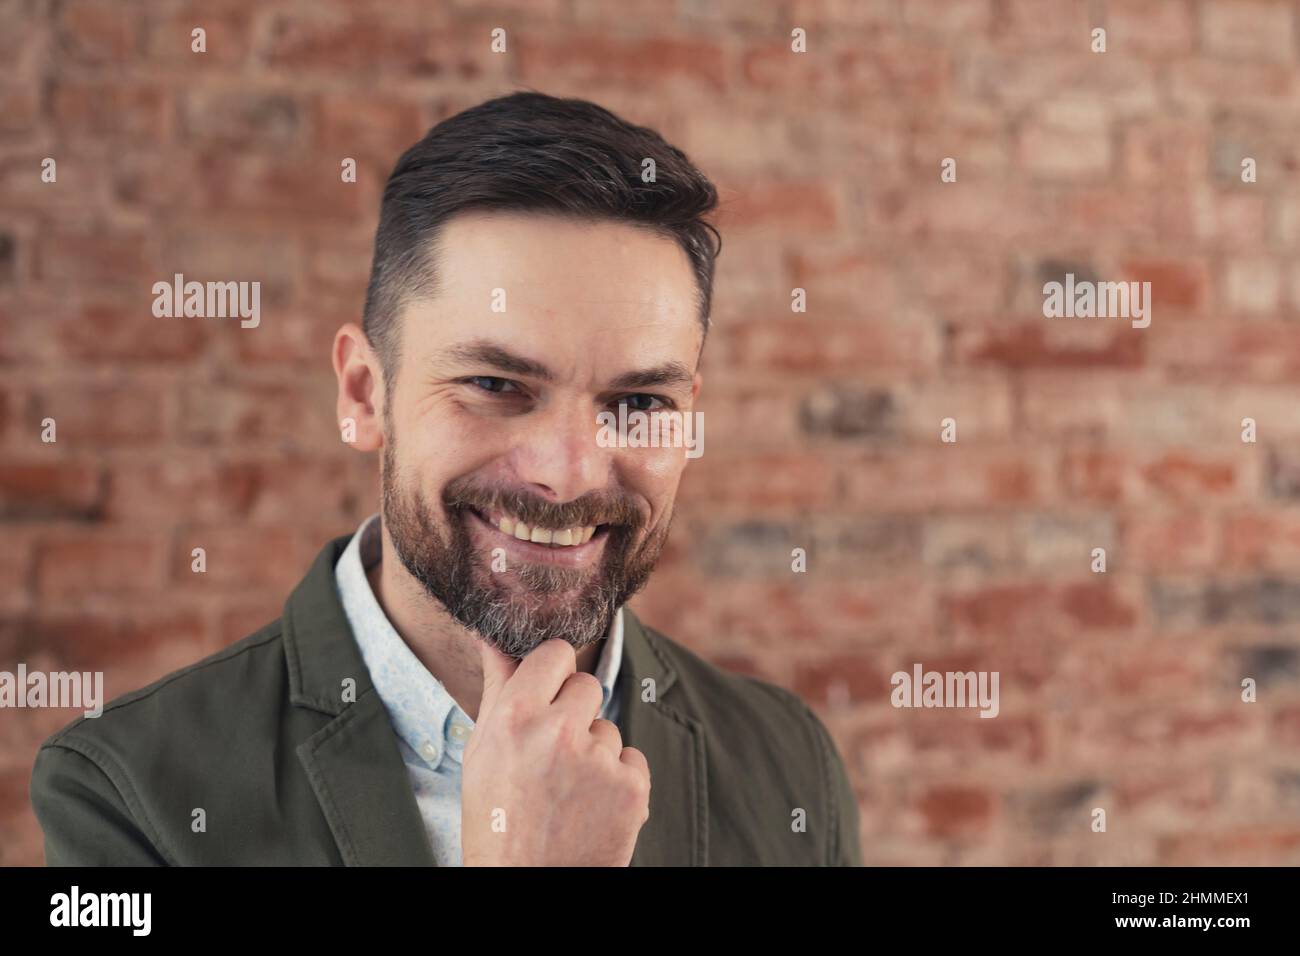 Kokett bärtiger kaukasischer Mann mittleren Alters grinsend und mit der Hand auf seinem Kinn vor Backstein auf die Kamera schauend. Hochwertige Fotos Stockfoto